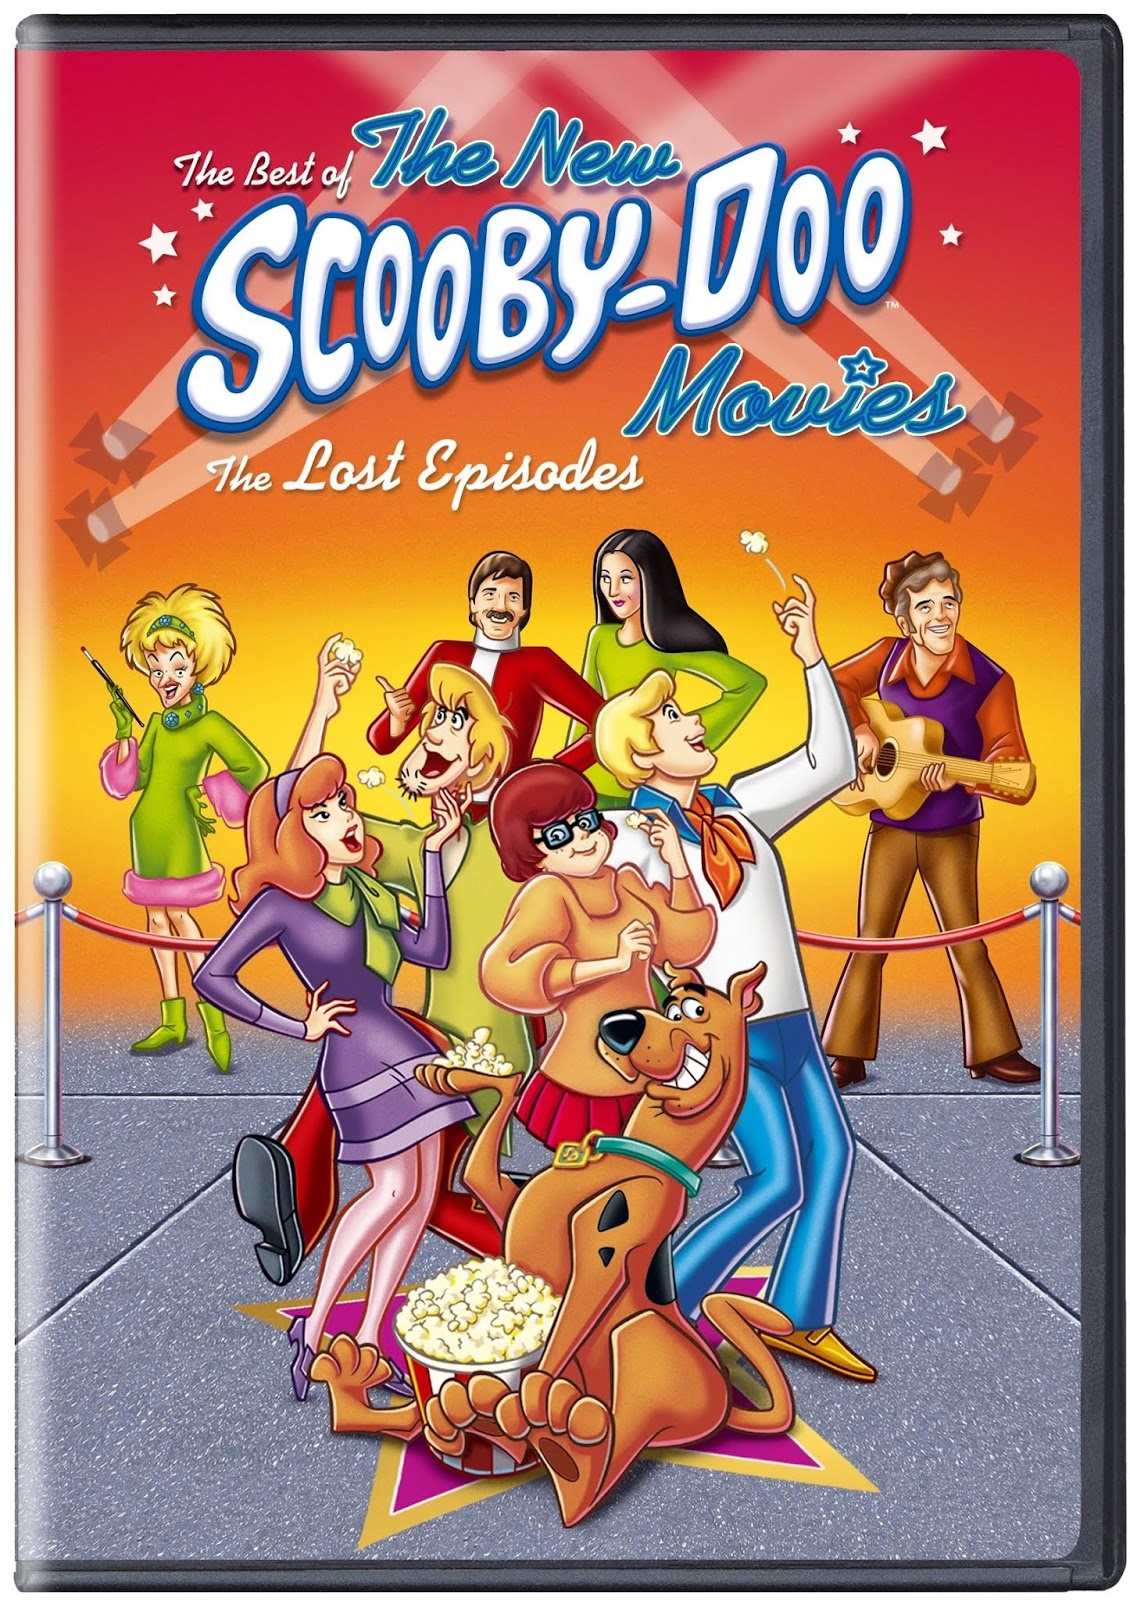 scooby doo movie